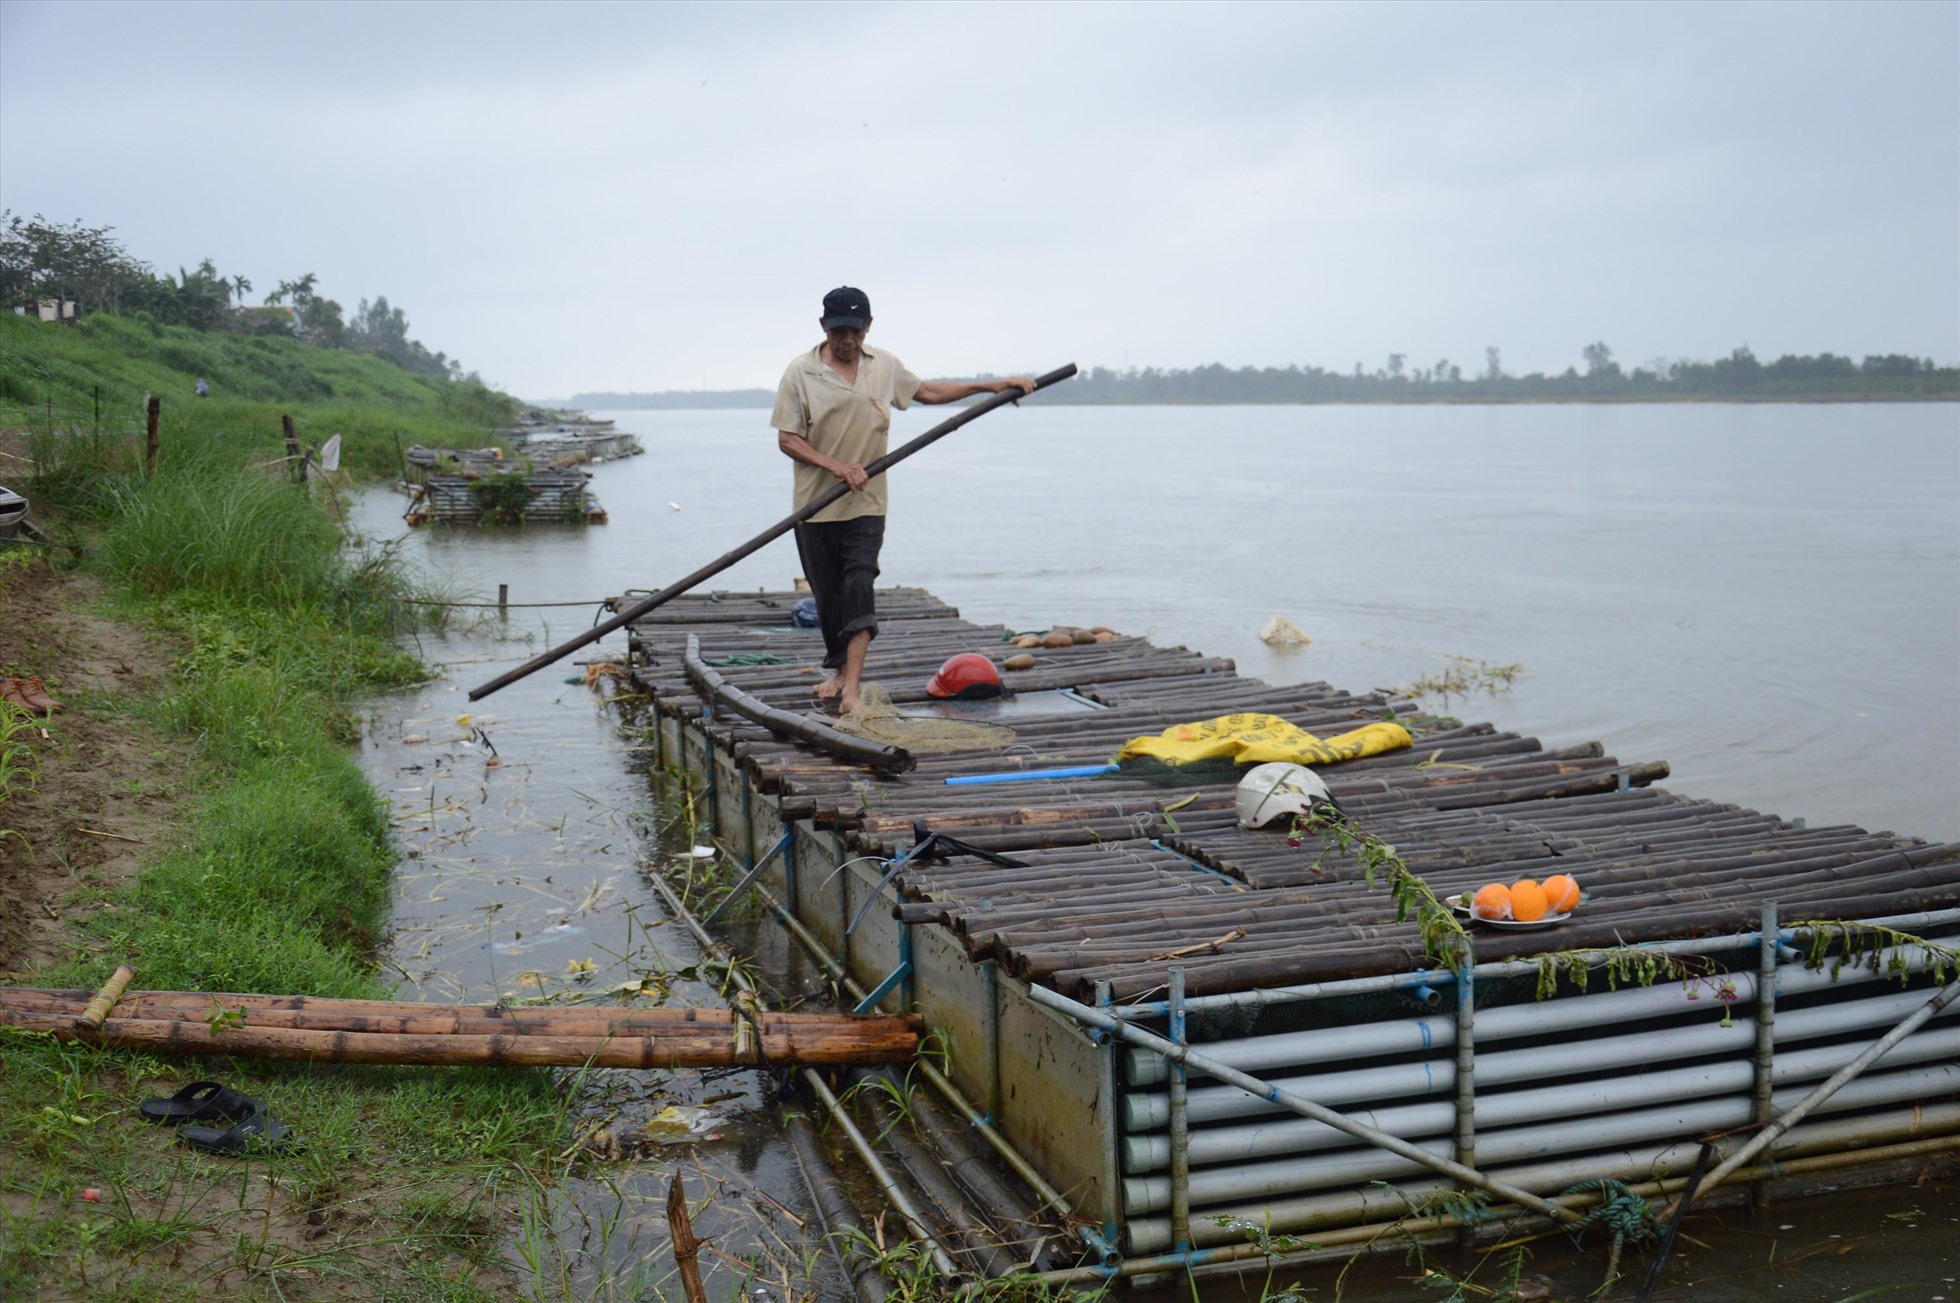 Nghề nuôi cá lồng bè trên sông Trà Khúc của người dân Quảng Ngãi đã có từ lâu đời, đây là nghề mang lại nguồn thu nhập chính của nhiều người. Ảnh: Ngọc Viên